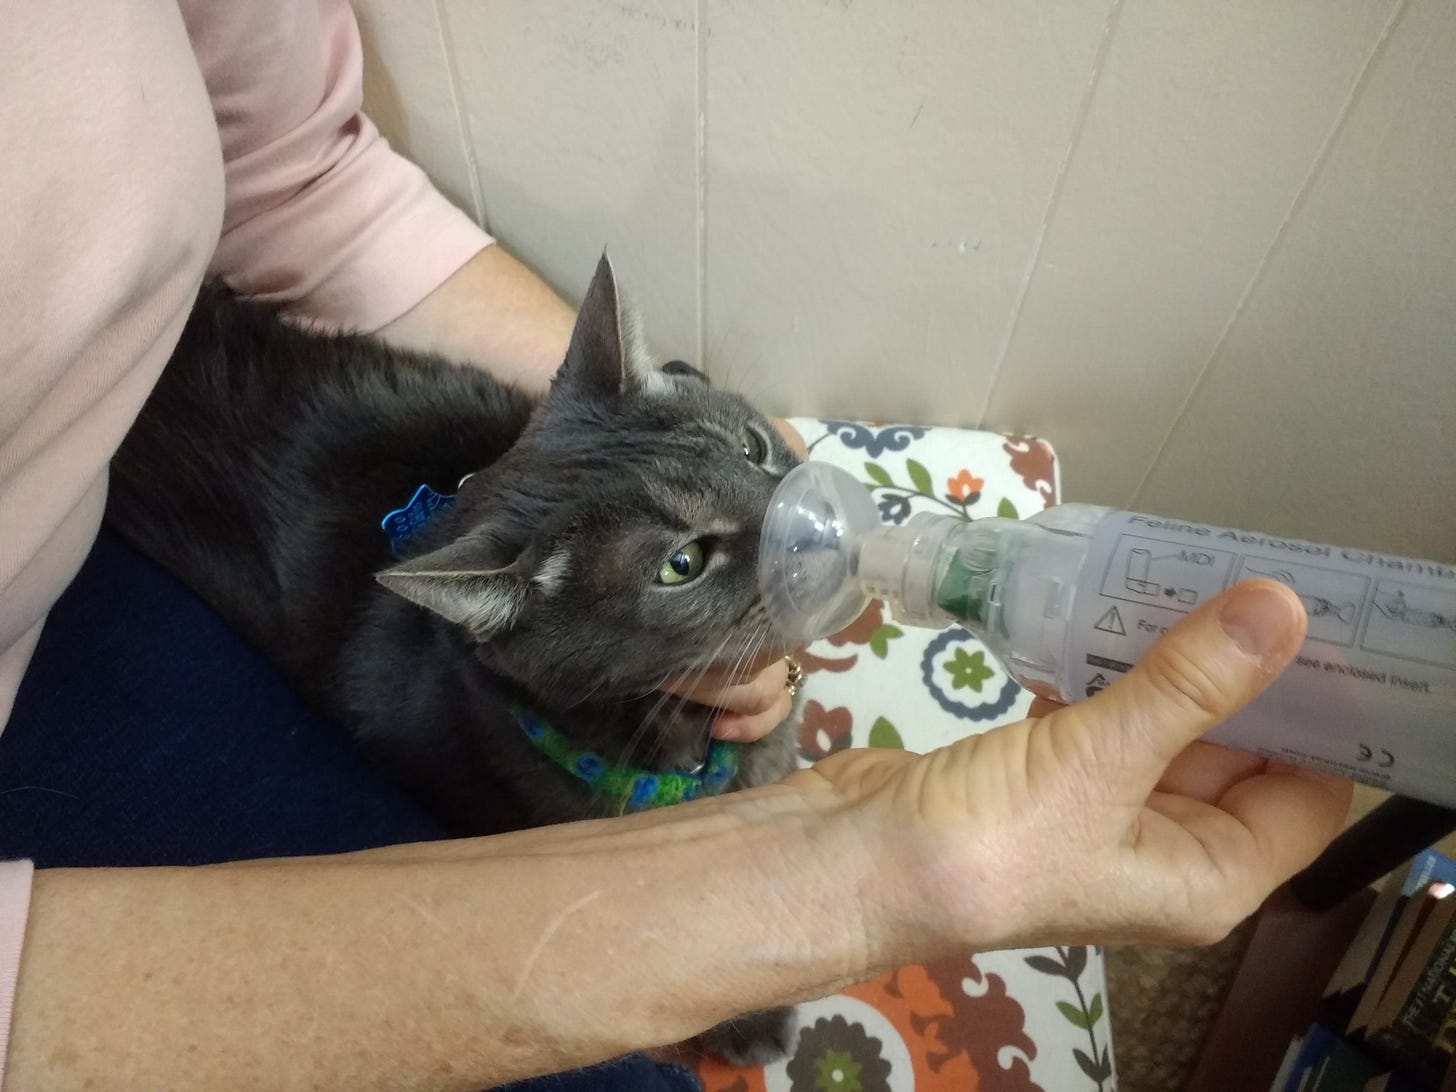 gandolph using an asthma inhaler for cats